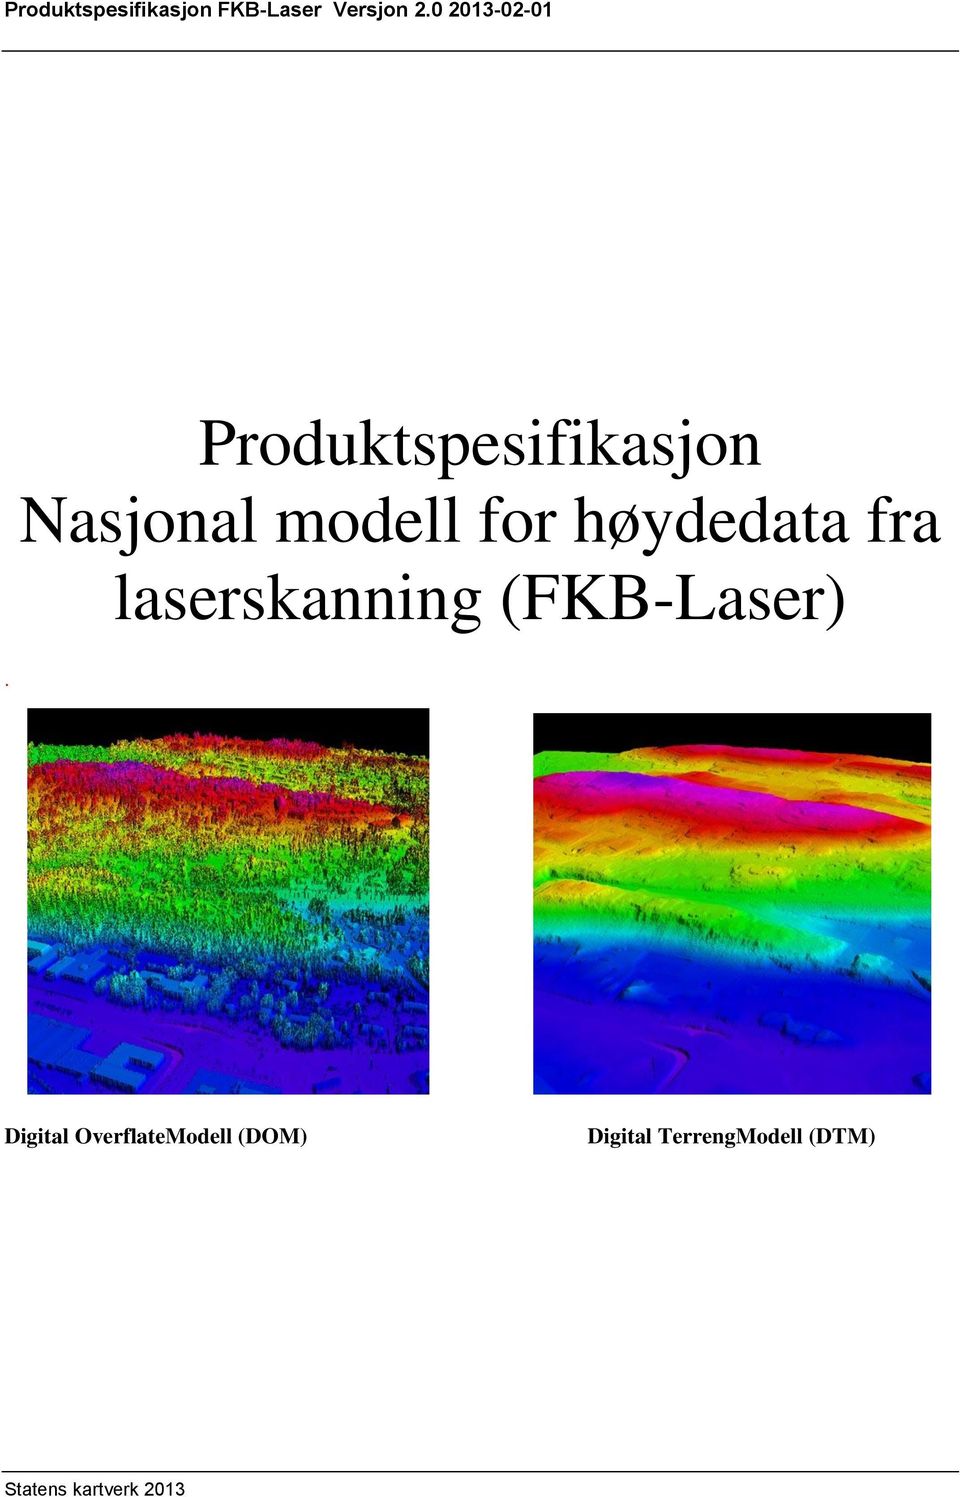 høydedata fra laserskanning (FKB-Laser).